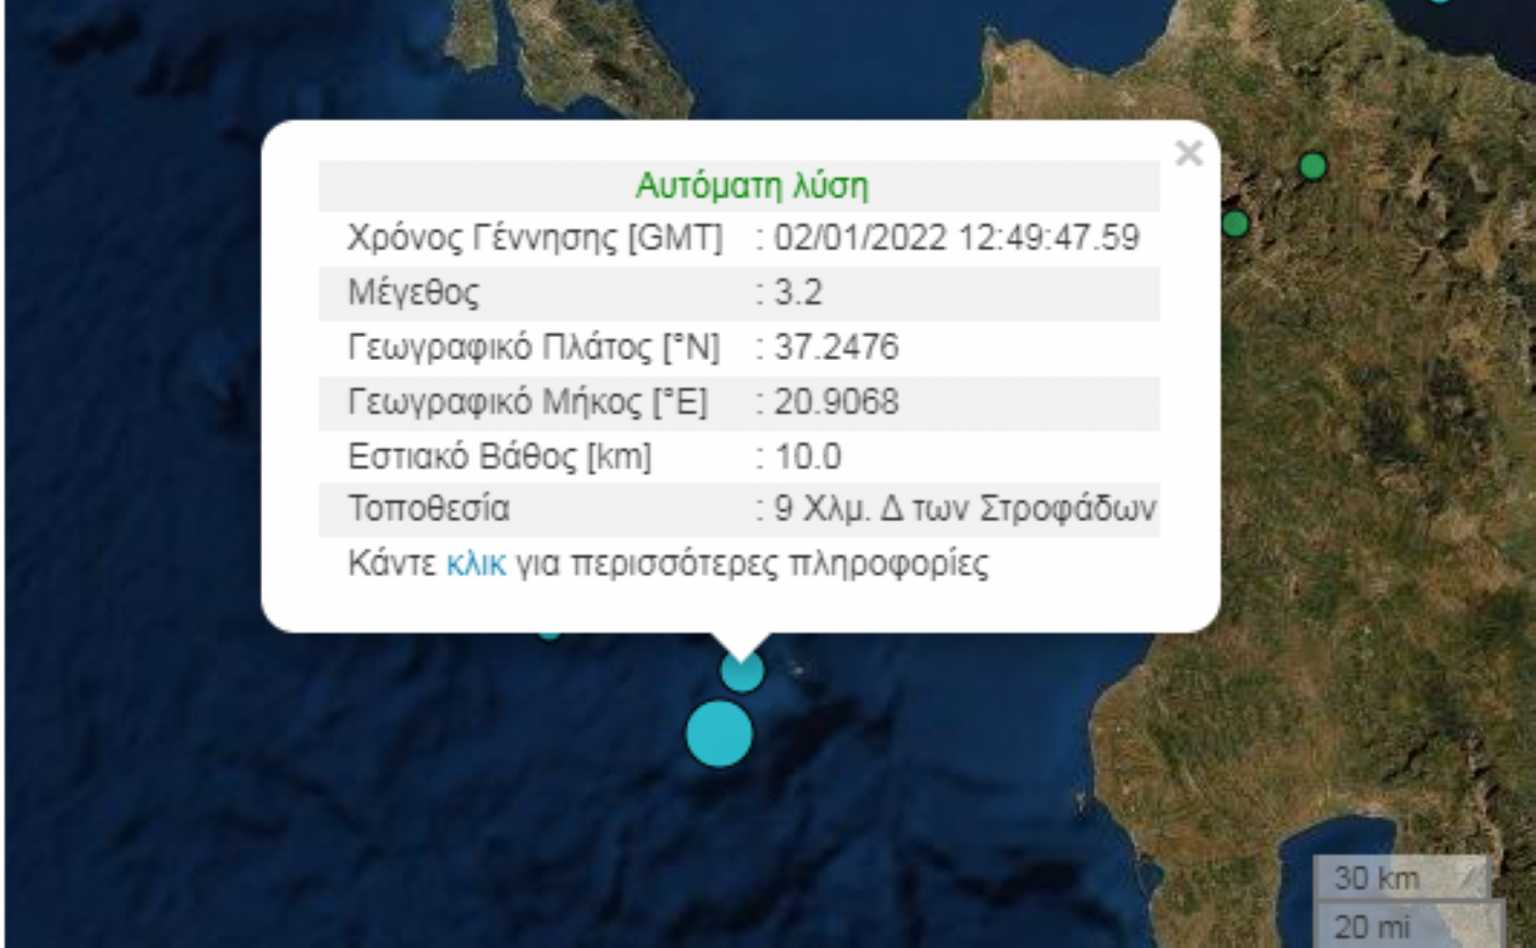 Νέος σεισμός κοντά στη Ζάκυνθο μετά τα 4,1 Ρίχτερ – Εστιακό βάθος 10 χιλιομέτρων